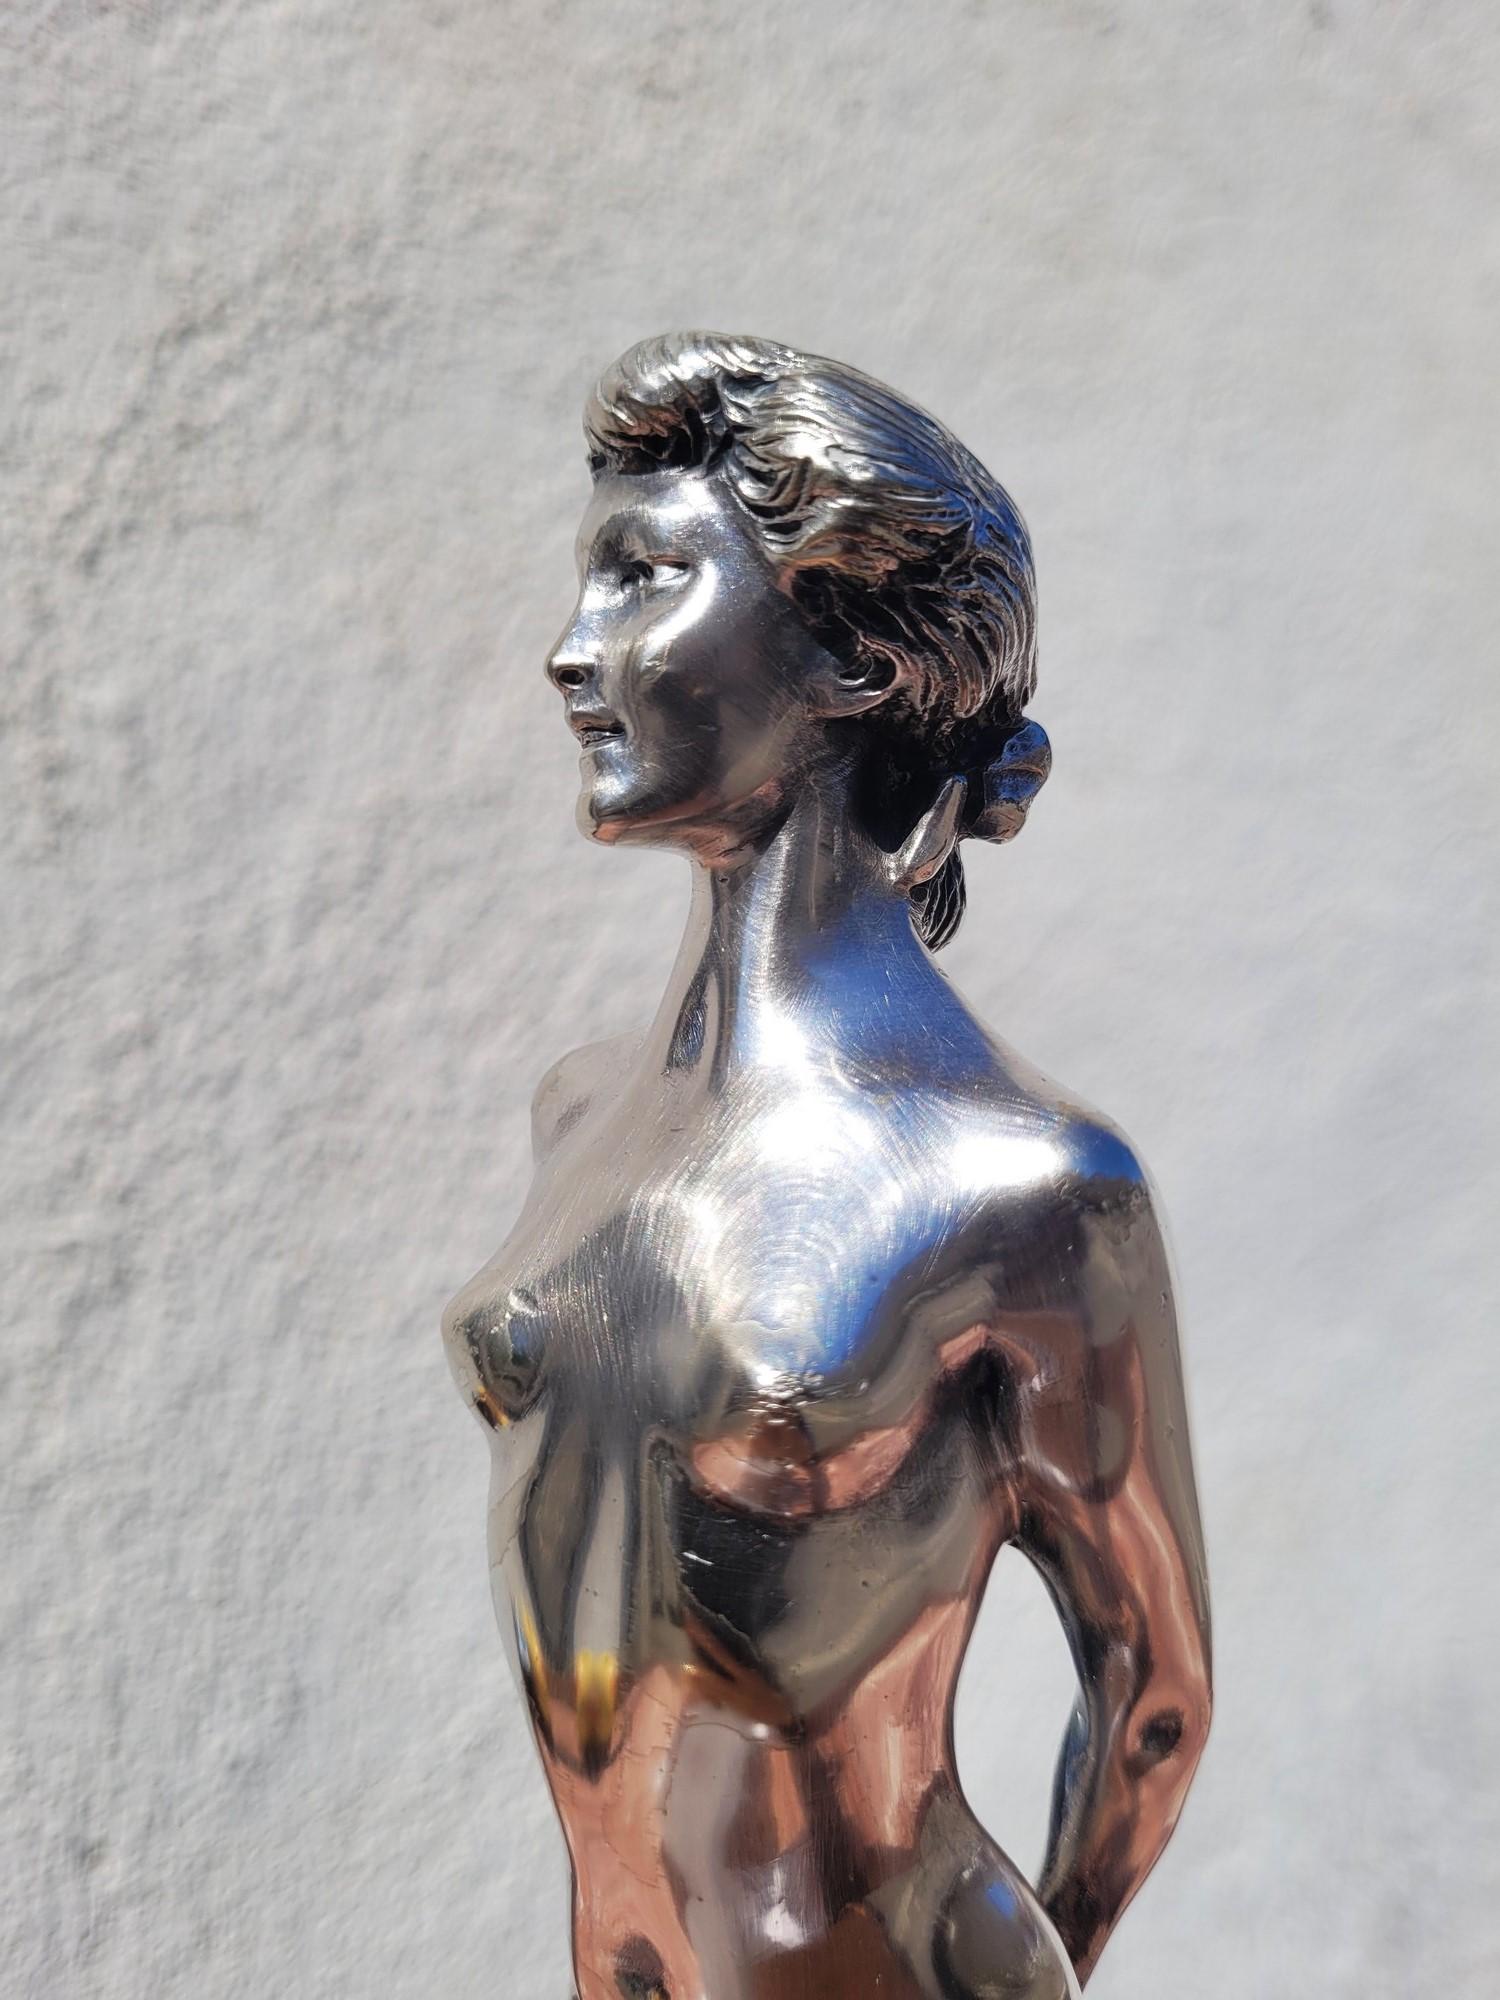 Bronze argenté représentant une femme nue, les cheveux relevés, tenant un drap dans le dos.

Cette sculpture est signée par Joe Descomps

Joe Descomps est un artiste français, membre de la Société des Artistes depuis 1883 ; il a exposé aux Salons et